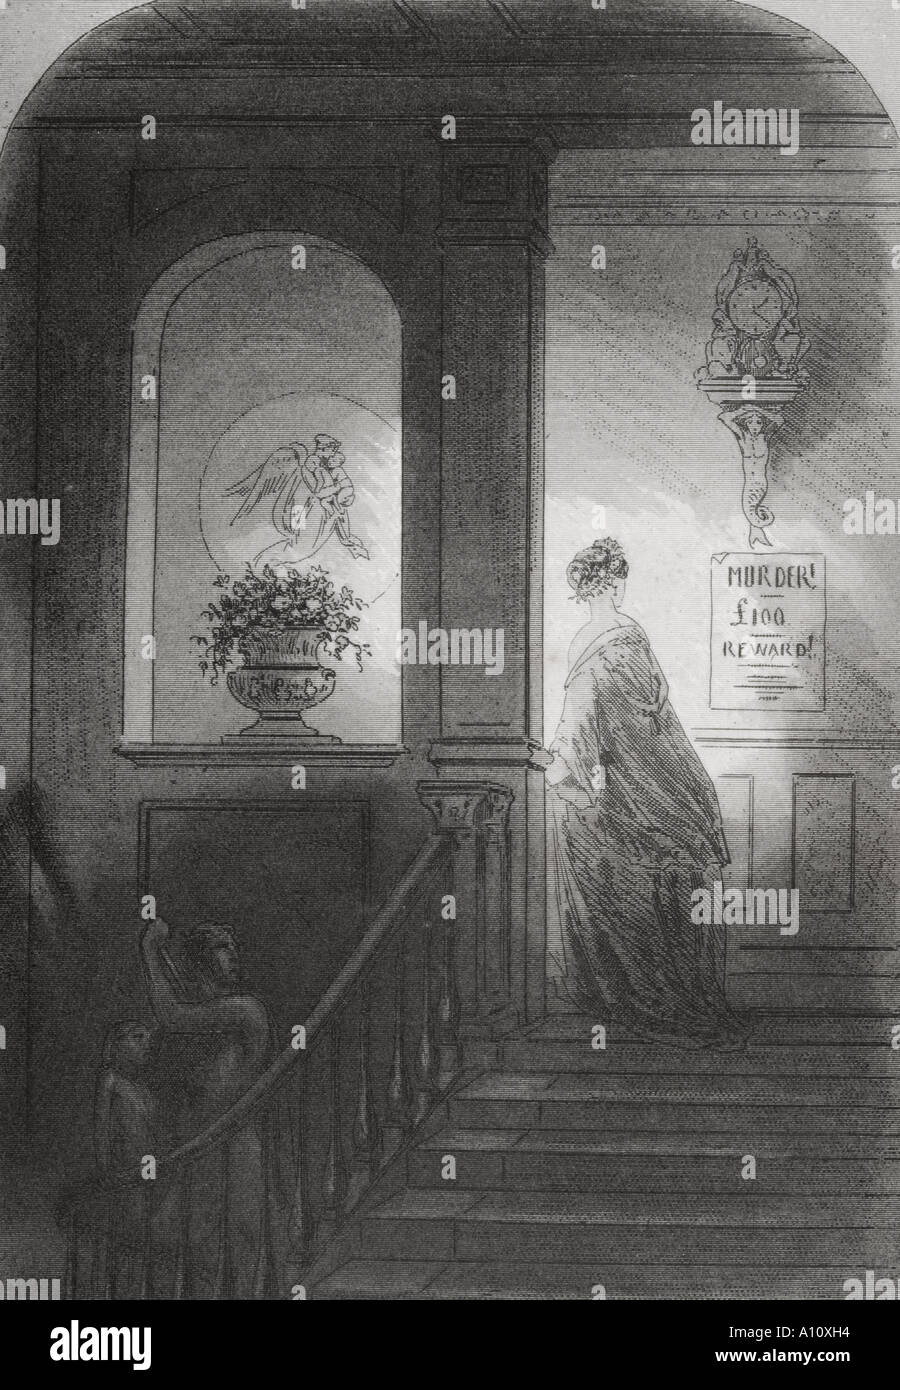 Ombra. Illustrazione di Phiz Hablot Knight Browne, 1815 - 1882. Dal libro Bleak House by Charles Dickens. Pubblicato a Londra, 1853. Foto Stock